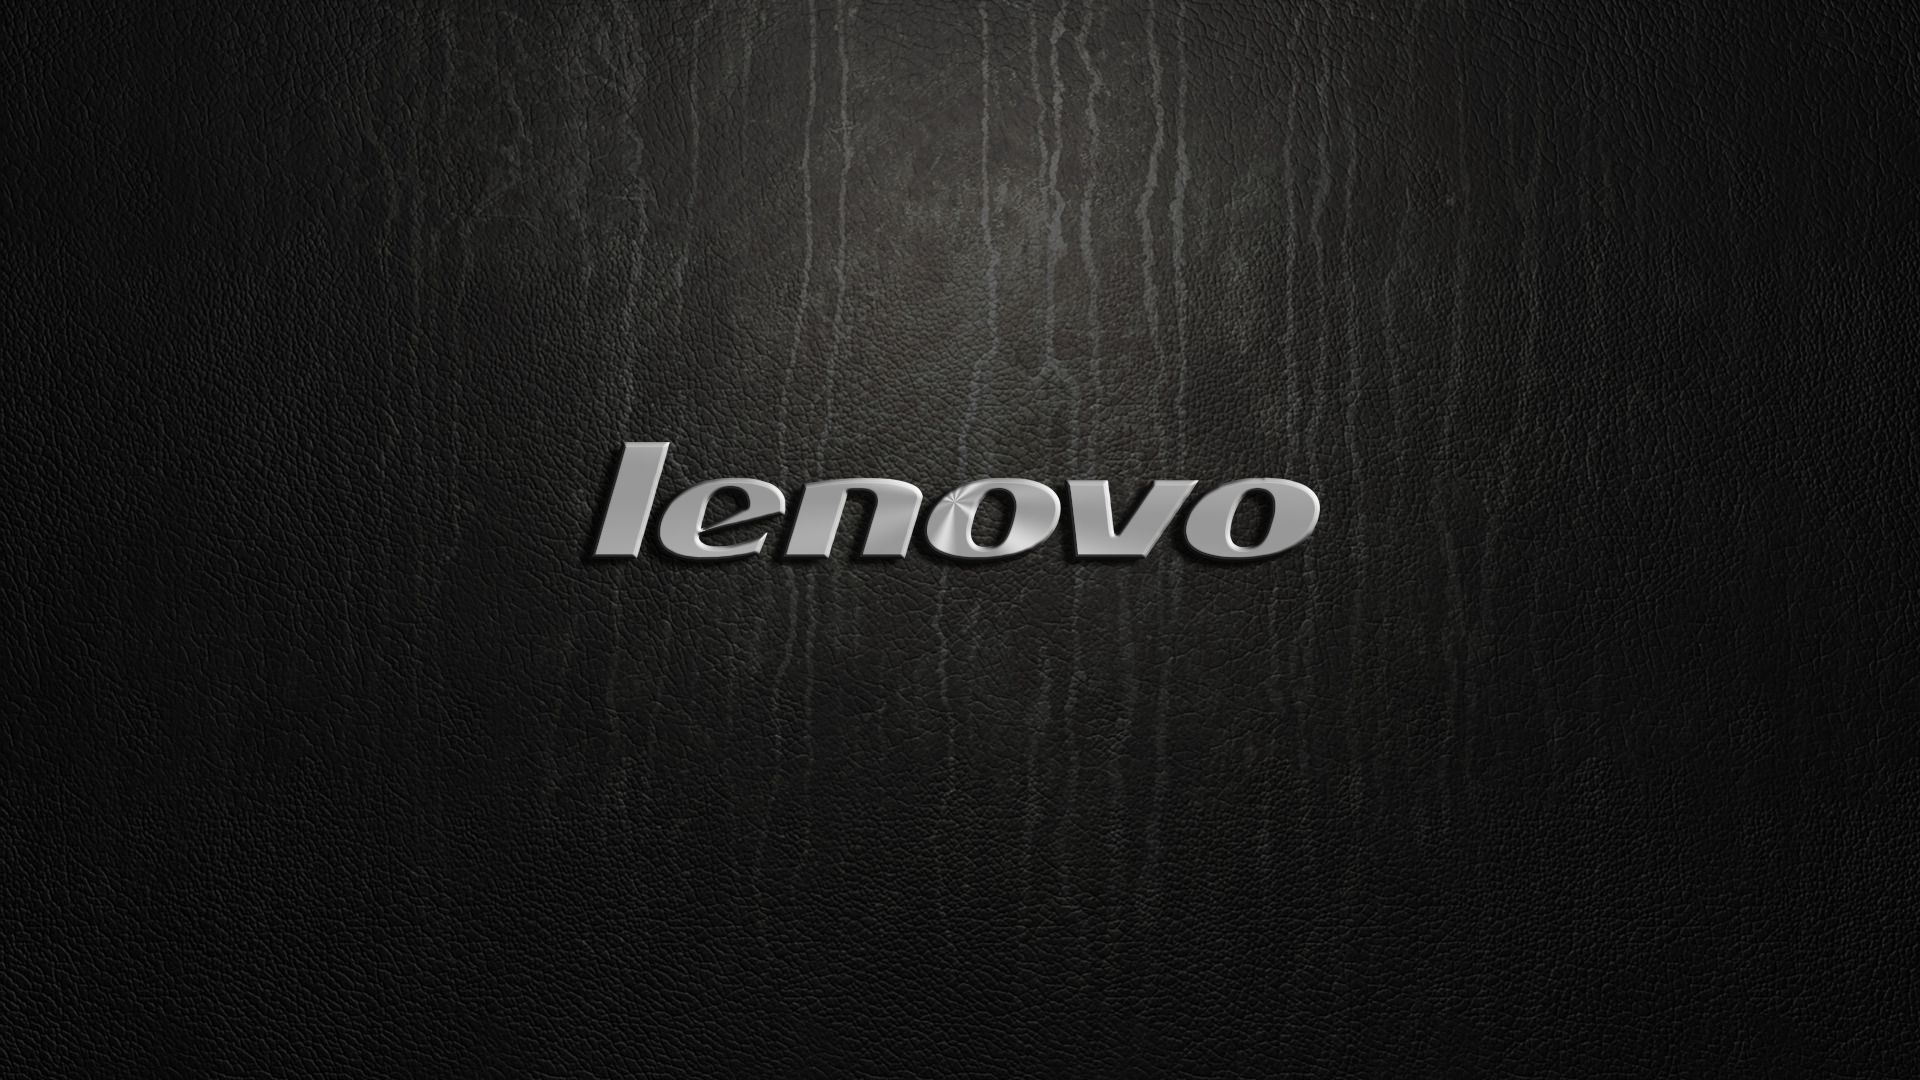 Laden Sie Lenovo HD-Desktop-Hintergründe herunter